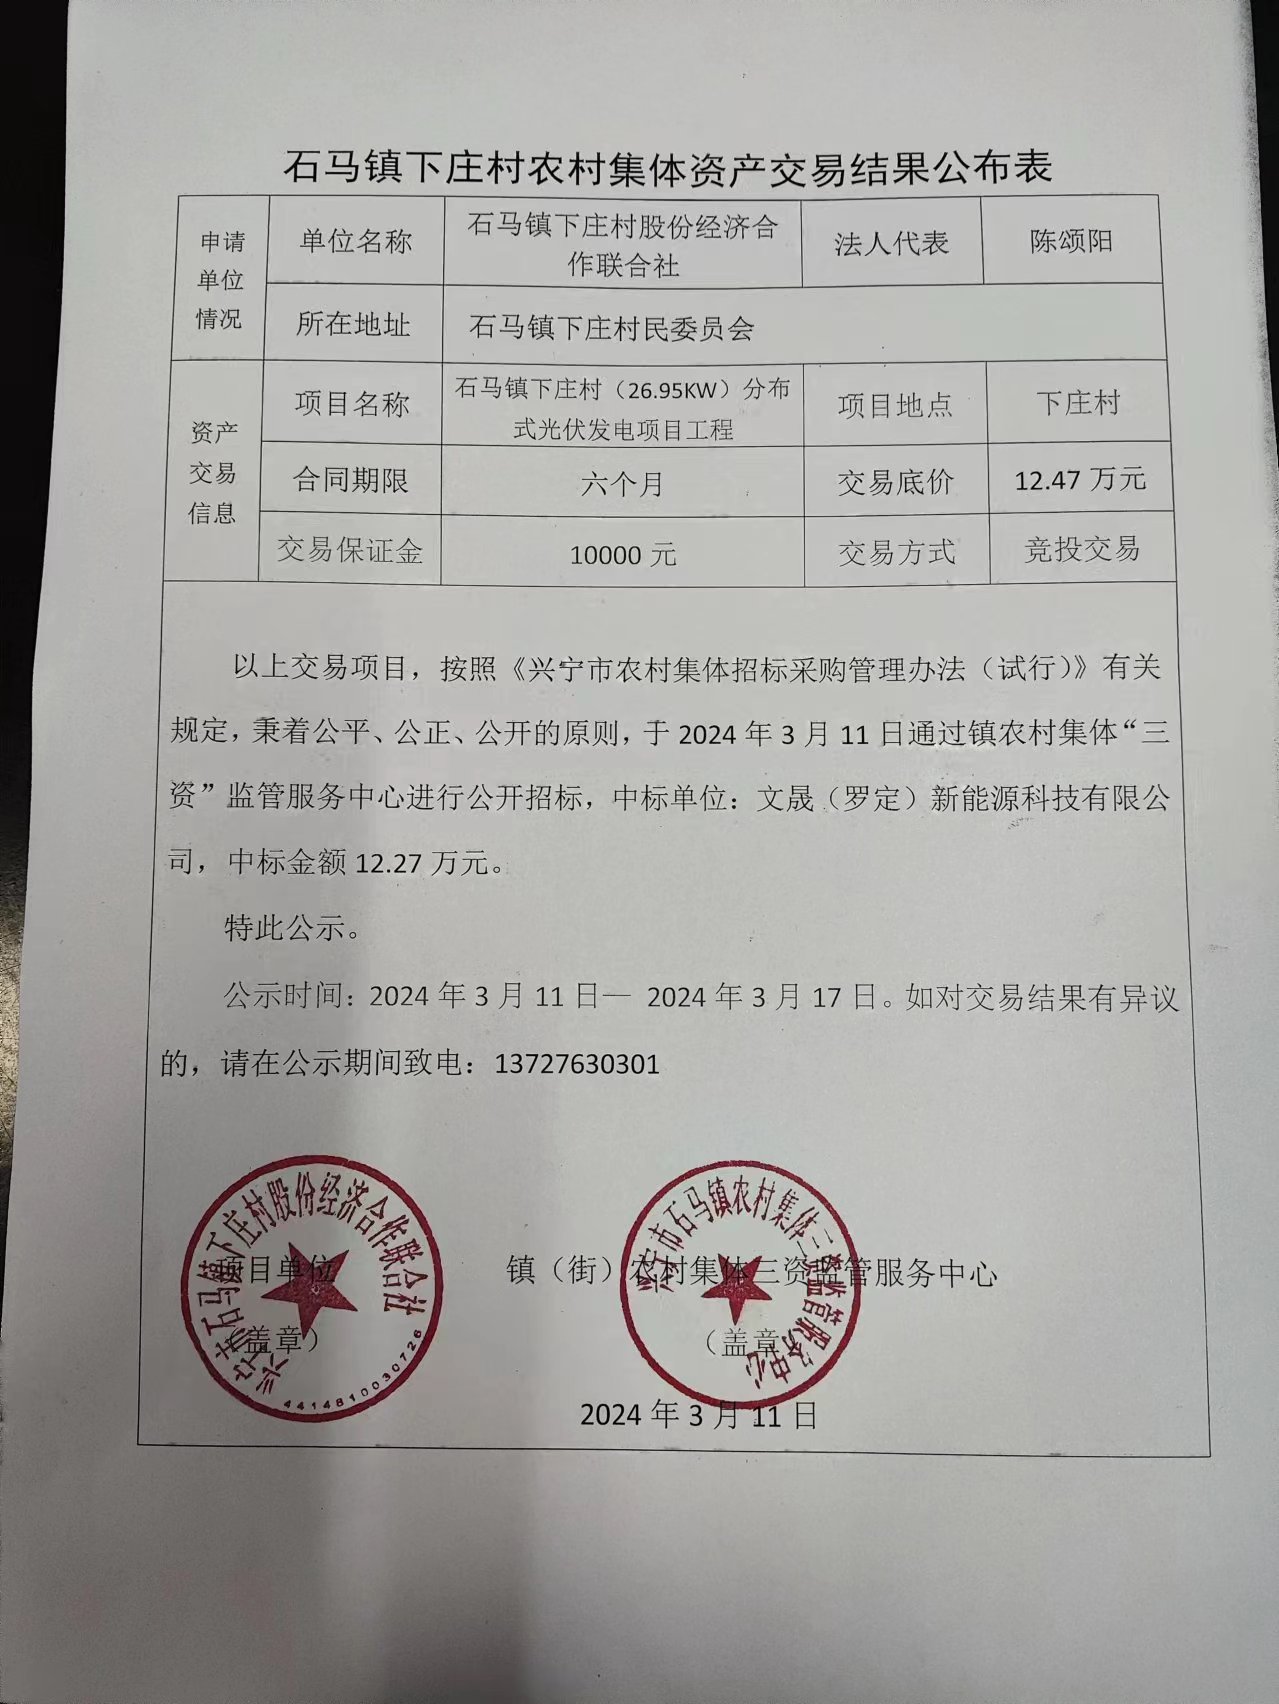 石马镇下庄村农村集体资产交易结果公布表2024.3.11.jpg